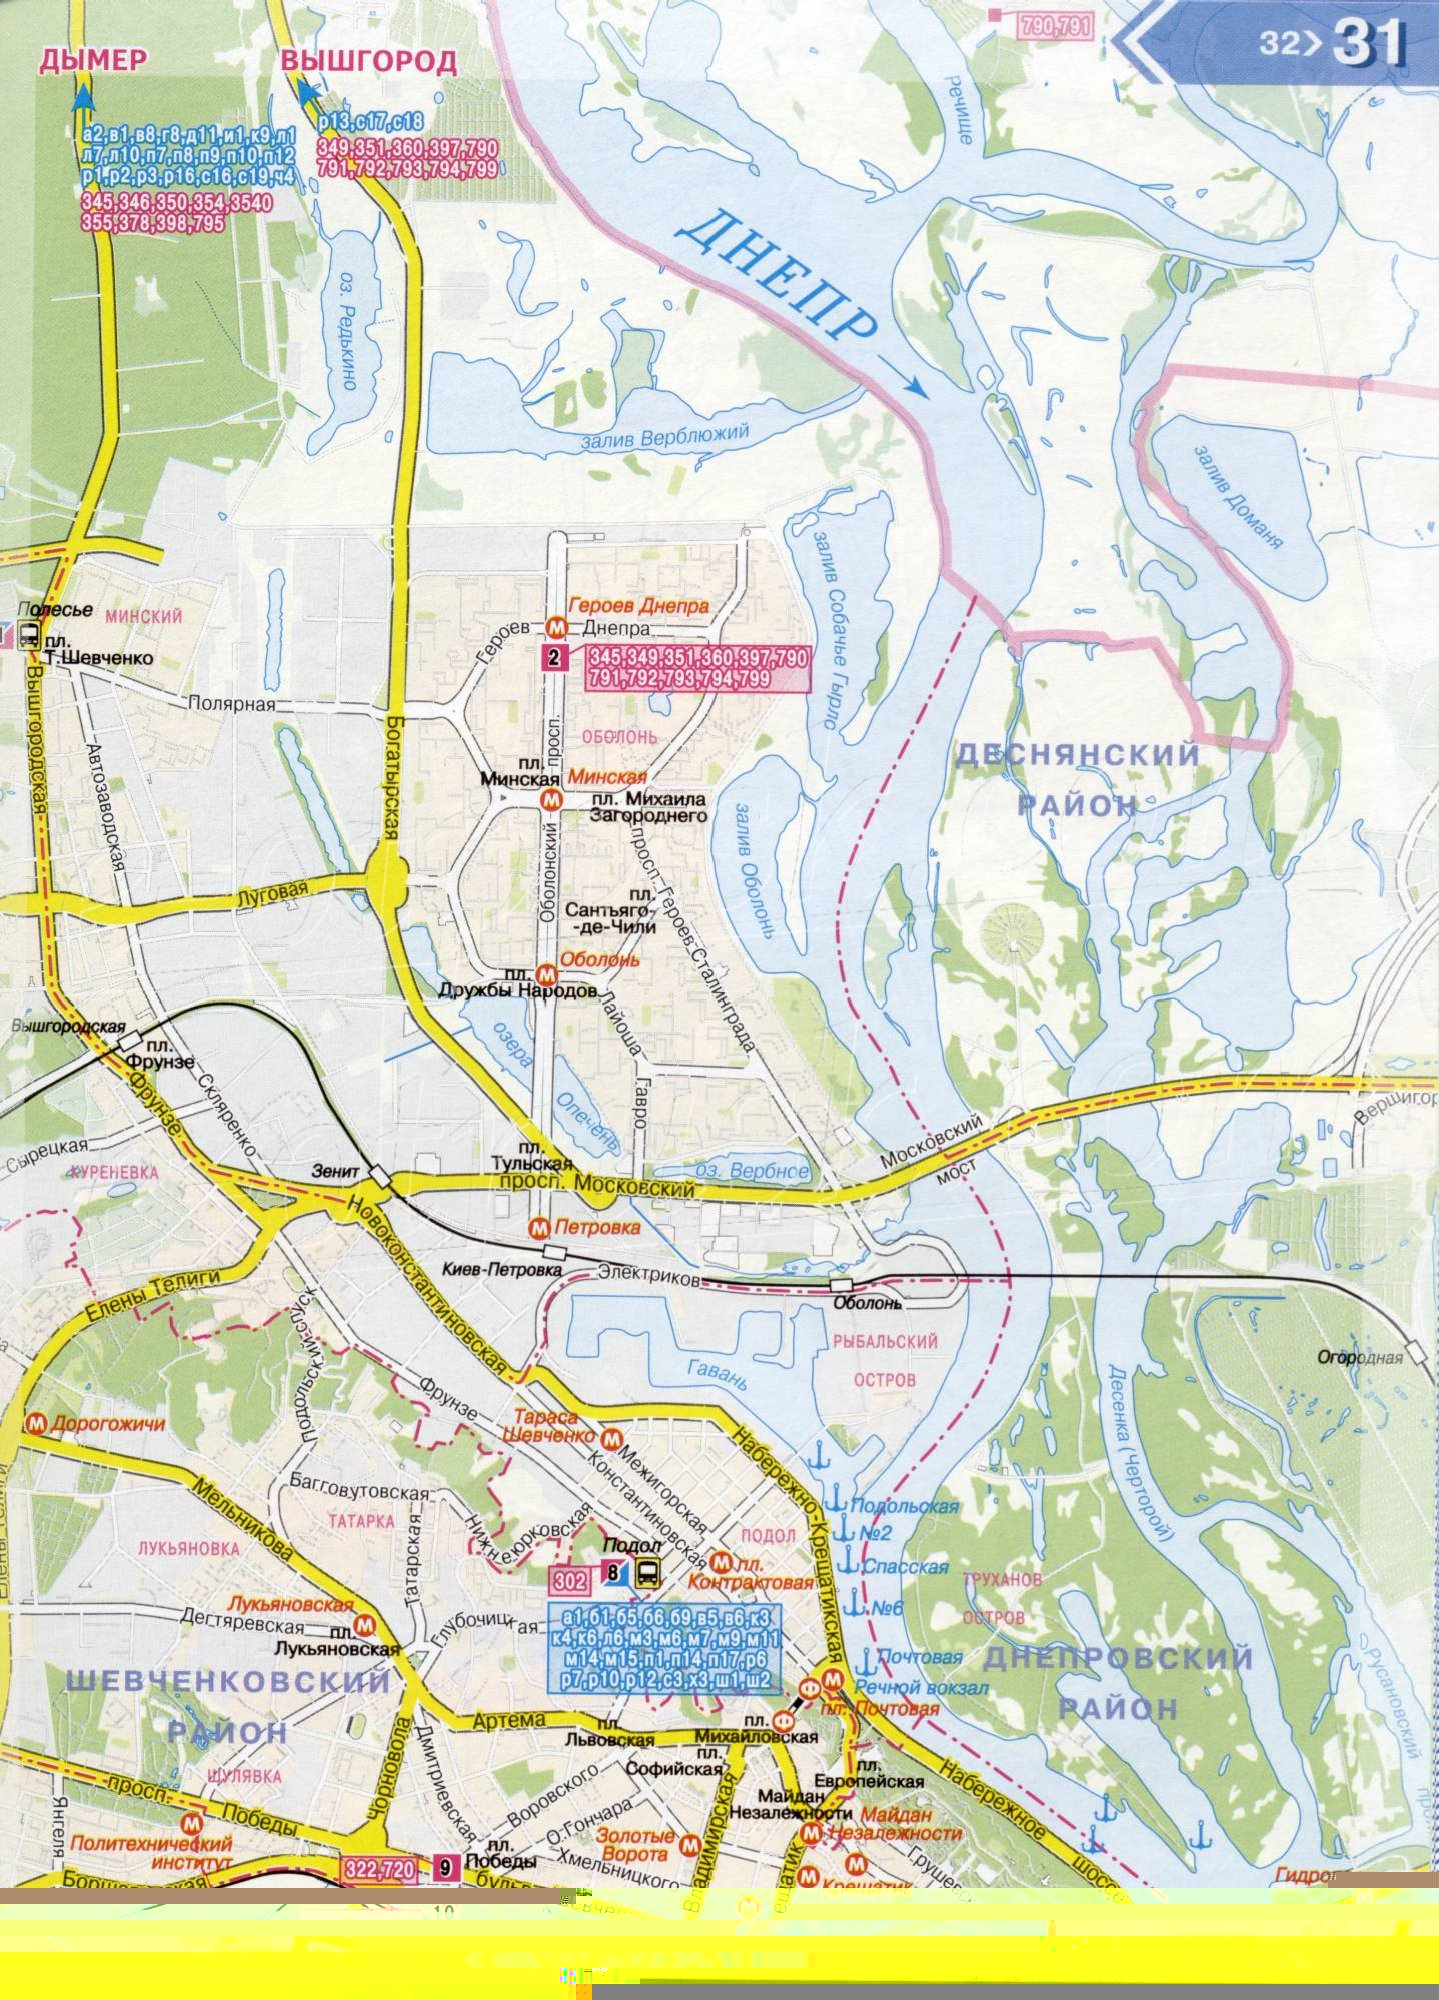 Карта Киева 1см-800м на 6 листах - основные автомобильные дороги города и окрестностей. Схема пригородного транспорта Киева. Скачать бесплатно, B0